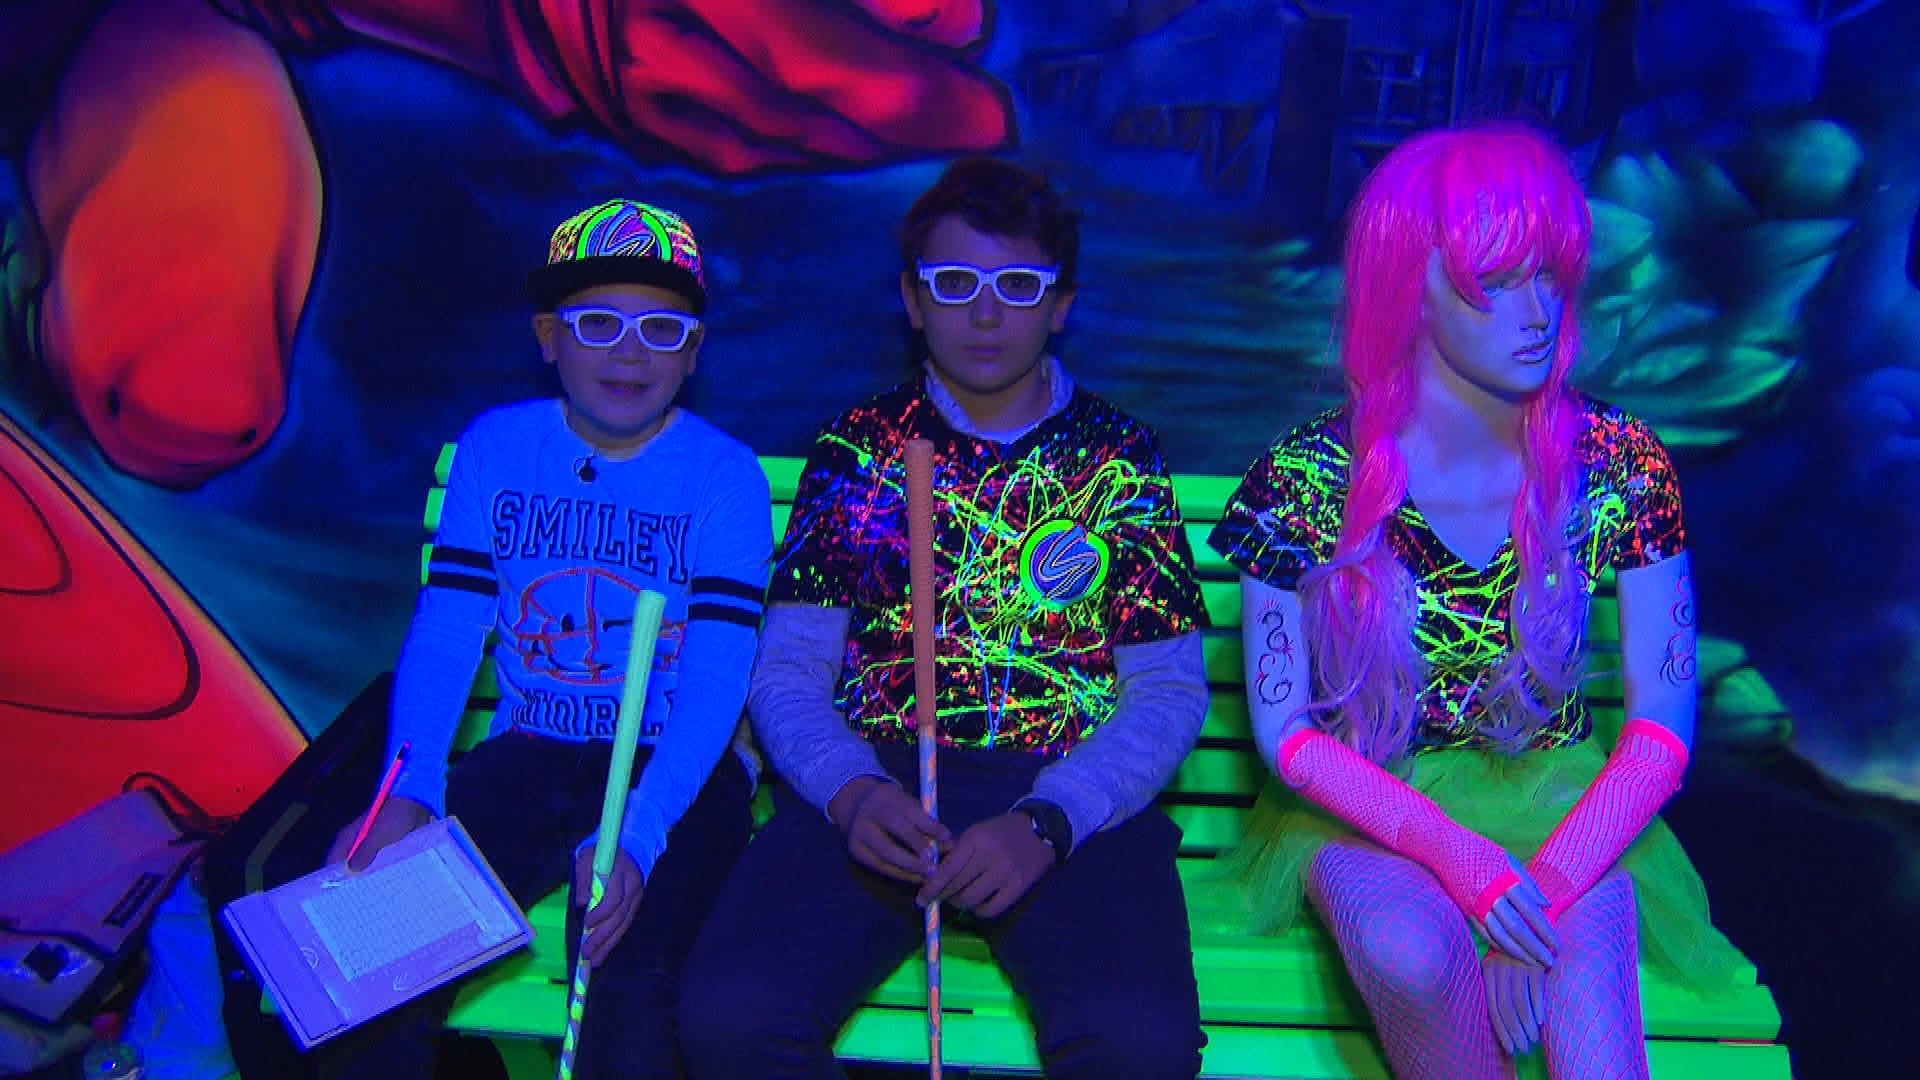 Drei Personen sitzen in einer abgedunkelten Umgebung, in der einzelne neonfarbene Elemente hervorstechen.